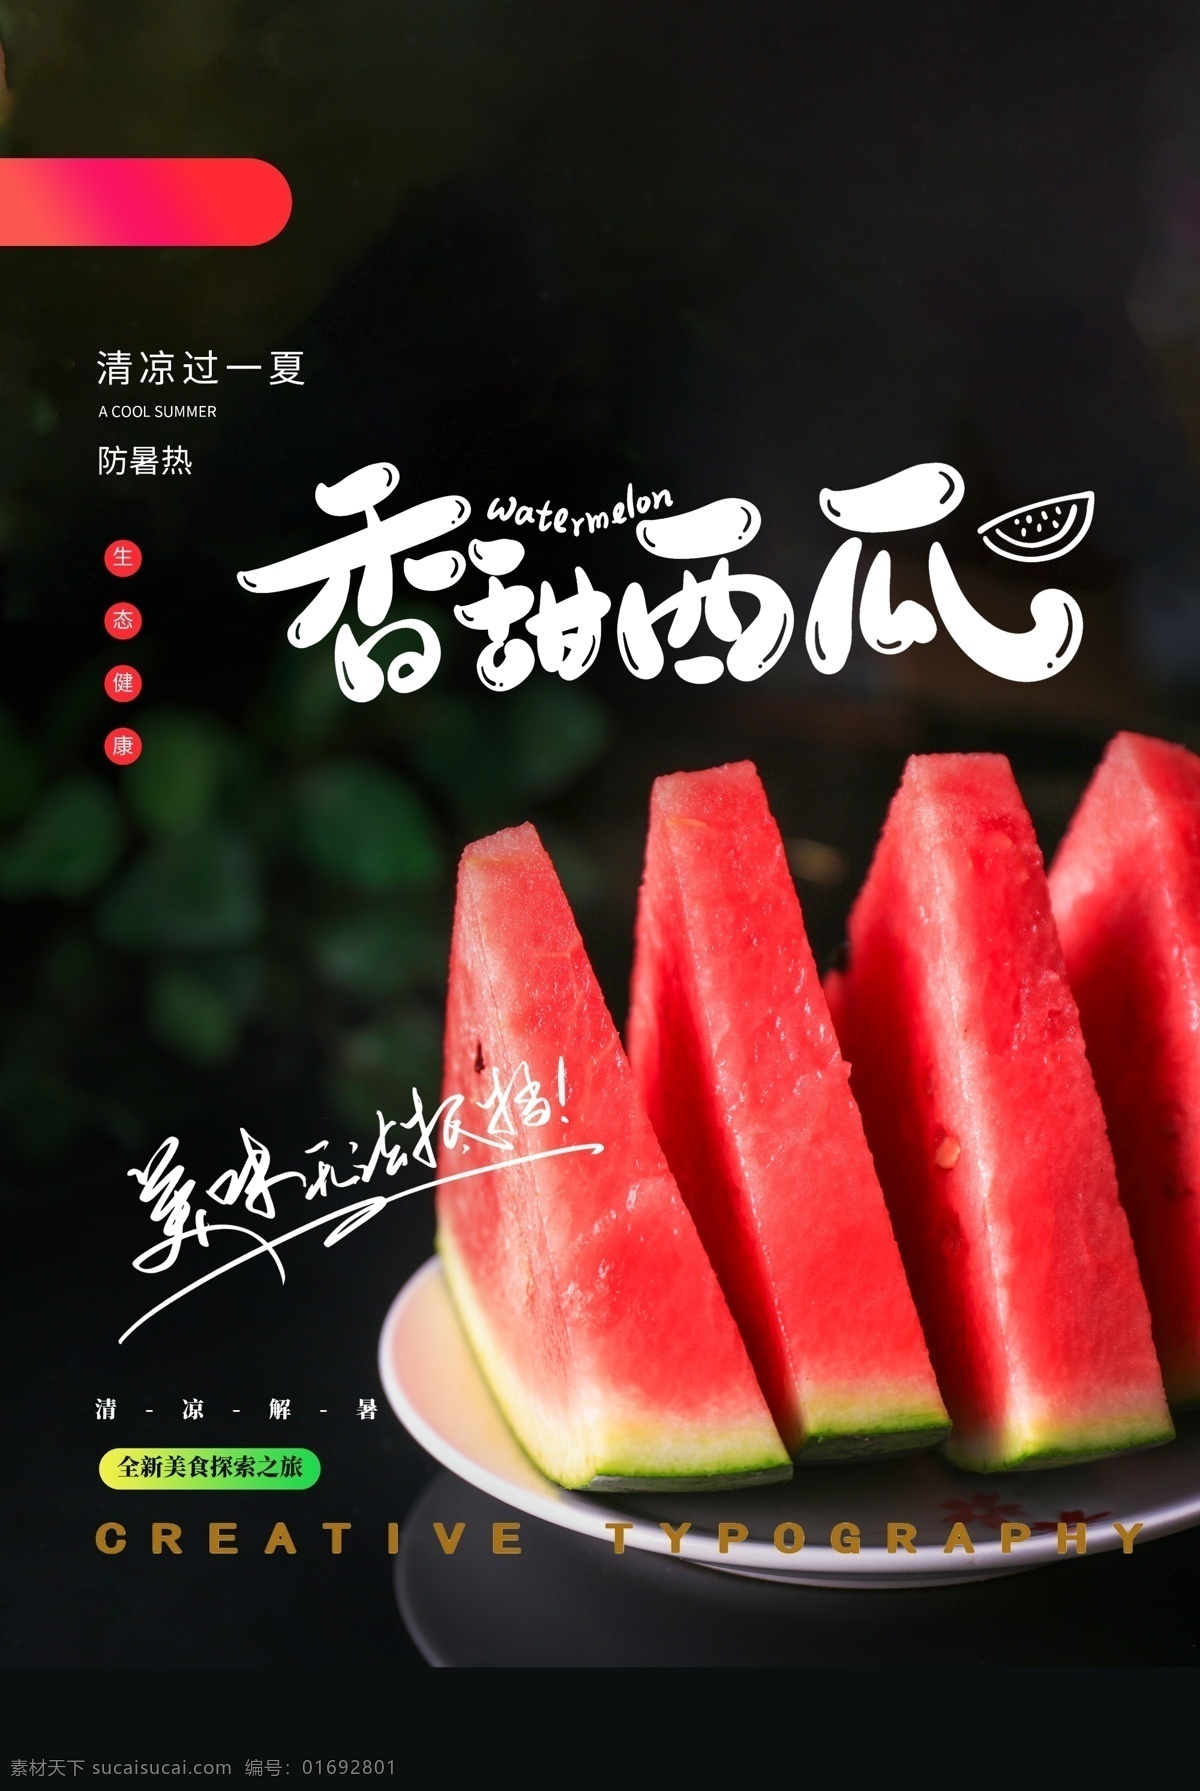 西瓜 水果 活动 促销 宣传海报 宣传 海报 饮料 饮品 甜品 类